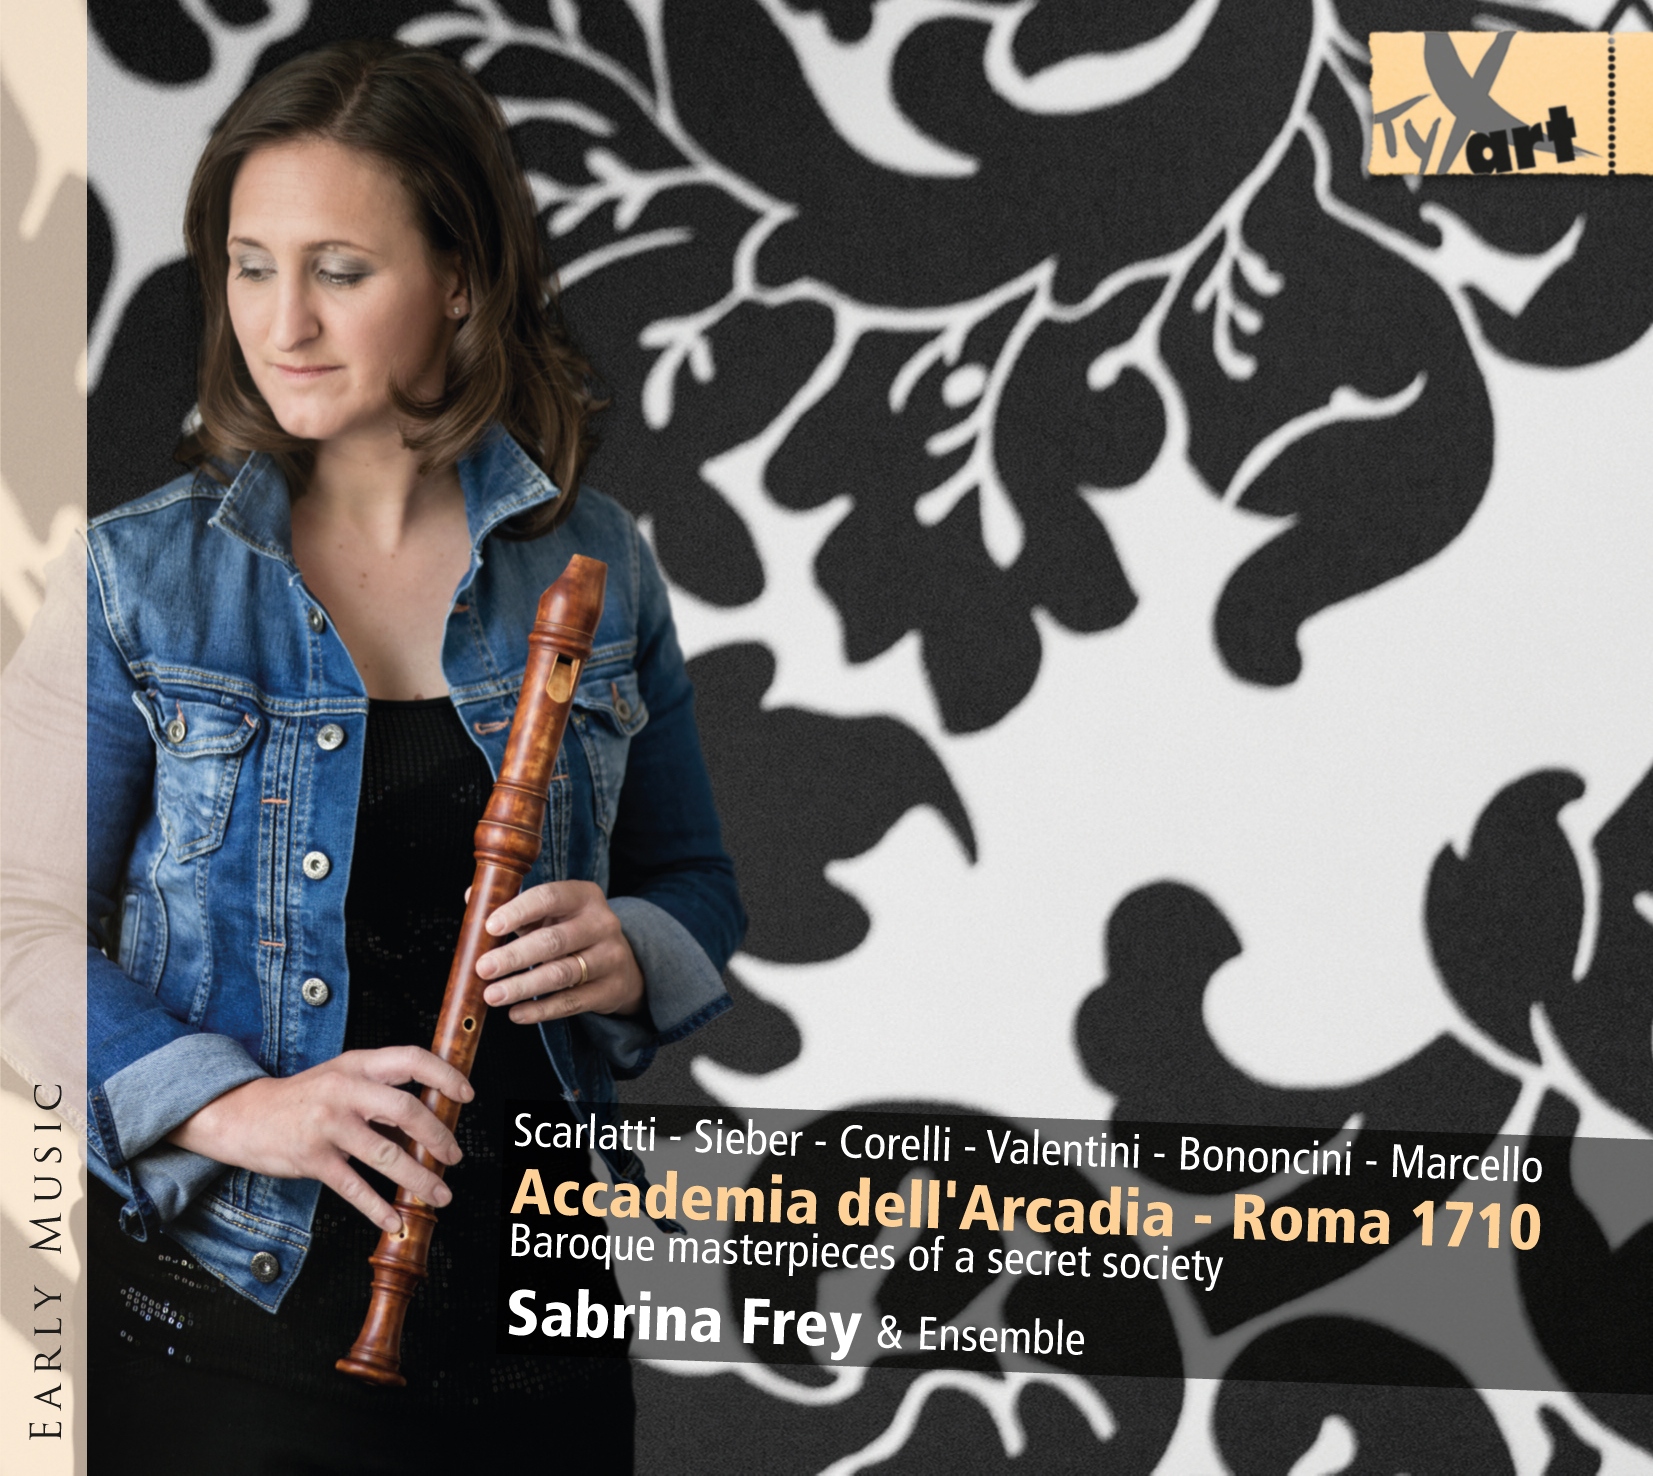 Accademia dell'Arcadia - Roma 1710 - Sabrina Frey & Ensemble